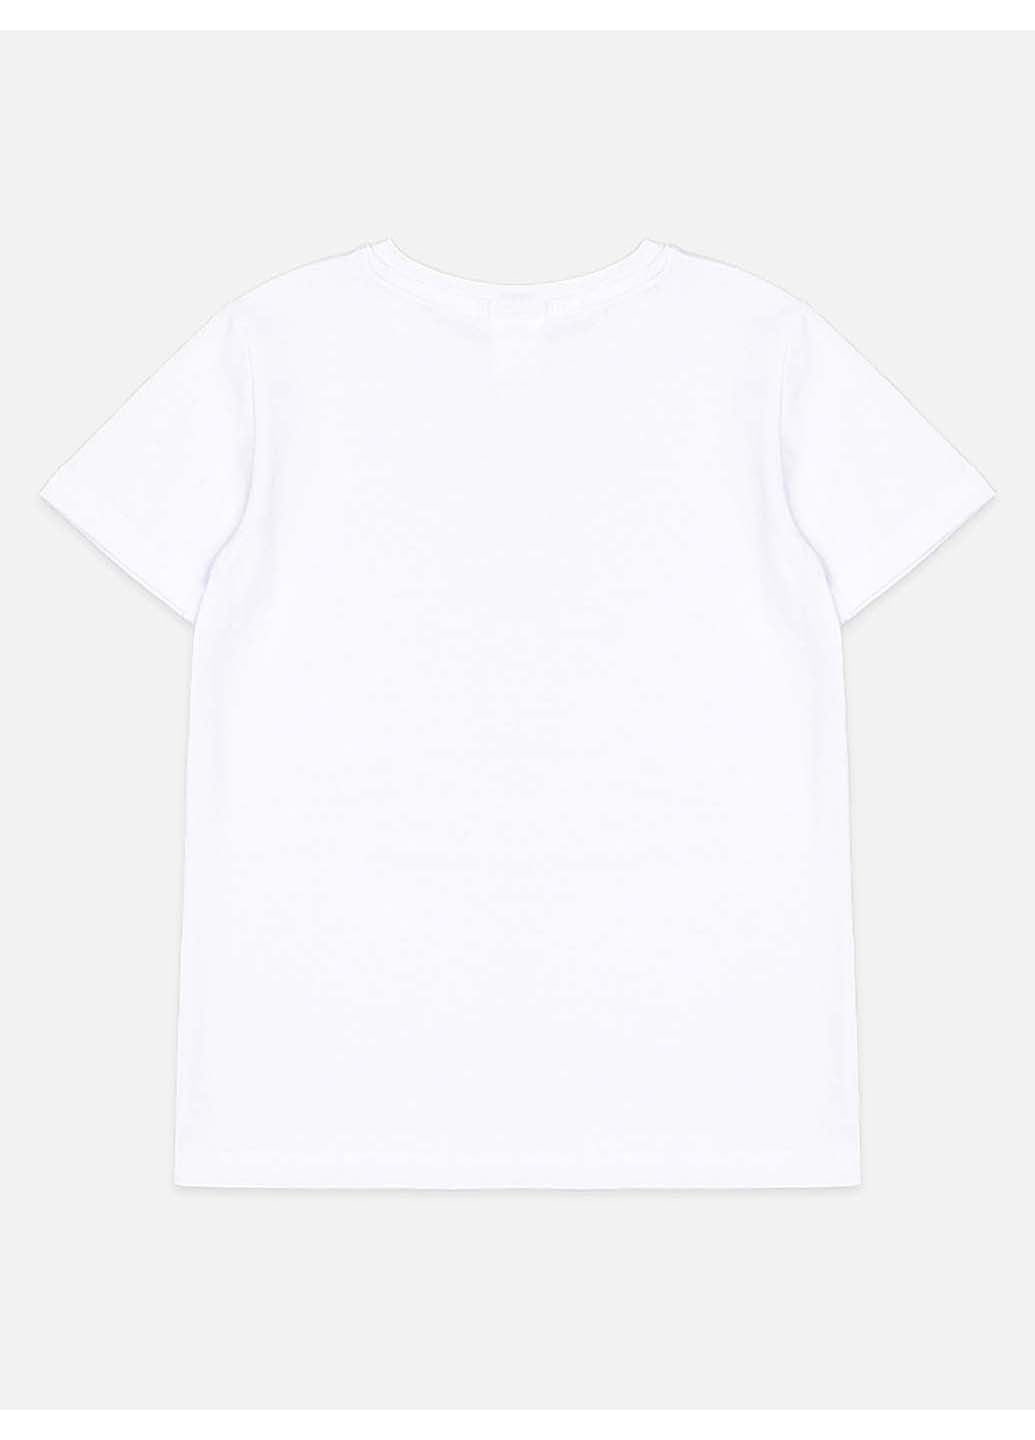 Белая демисезонная футболка Yuki